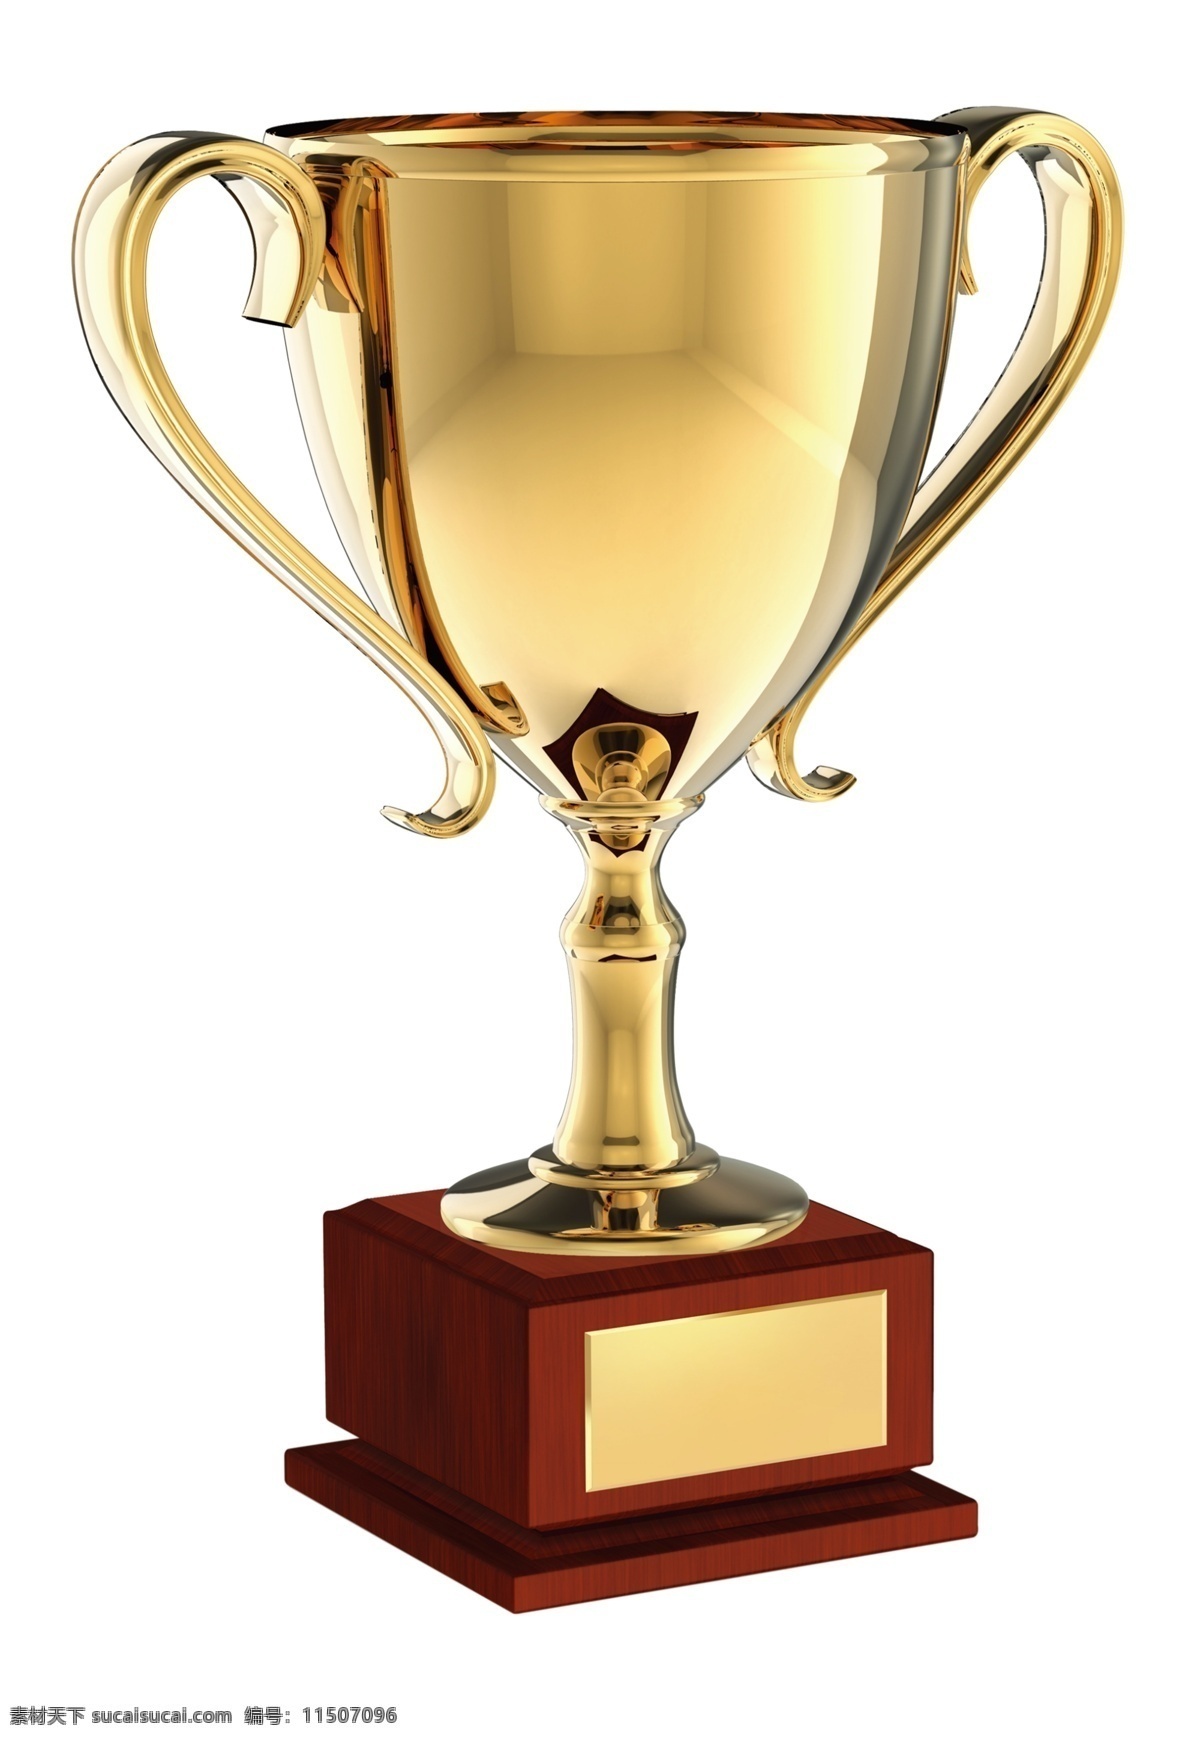 奖杯免费下载 奖杯 金杯 荣誉 荣誉奖杯 网页素材 网页模板